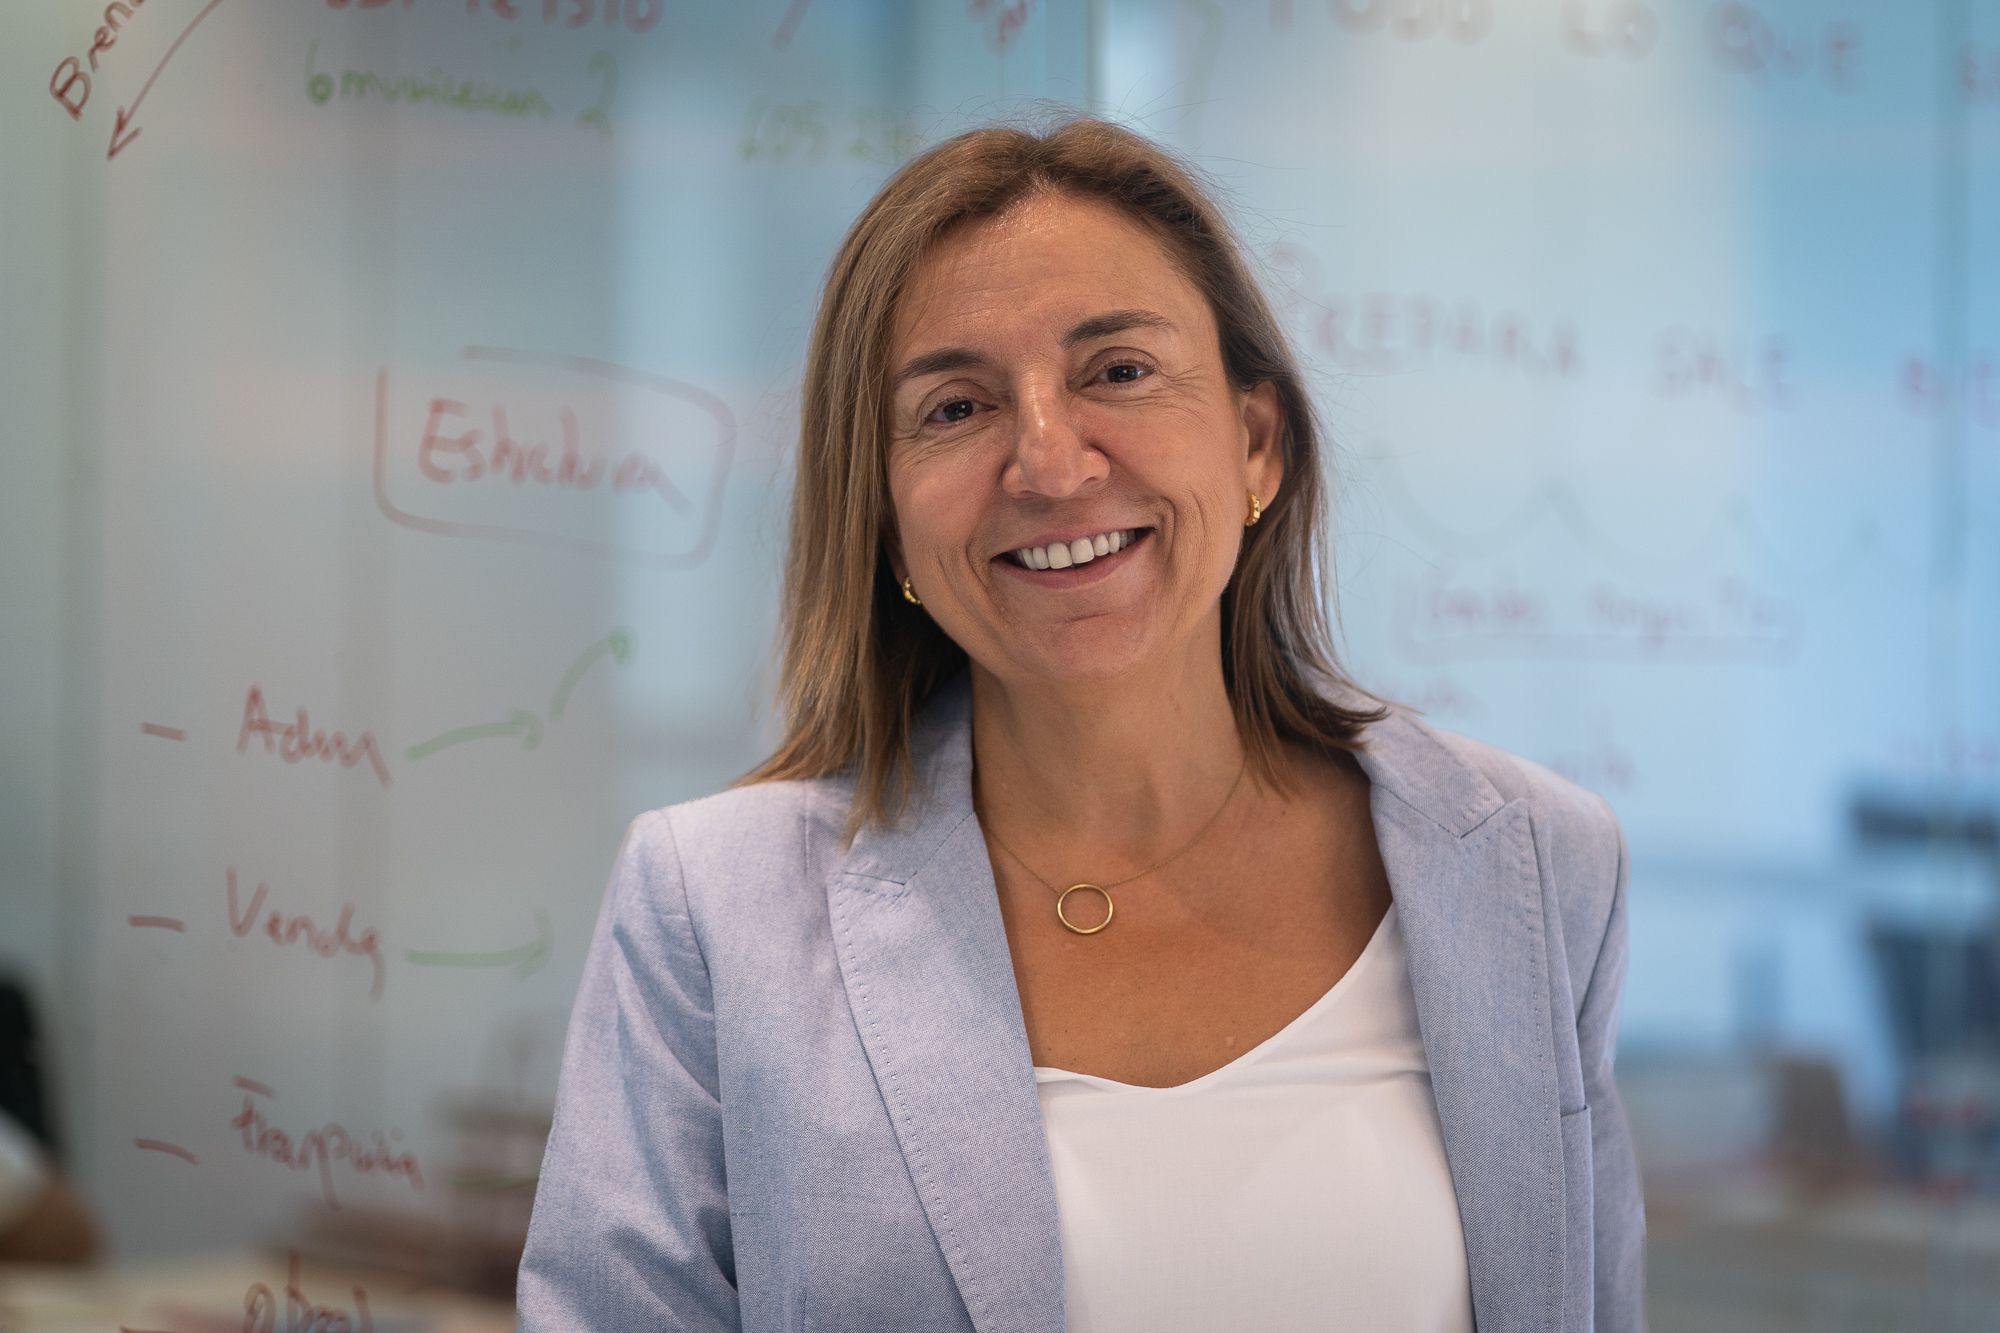 Argelia García és empresària i consellera d'empreses | Mireia Comas